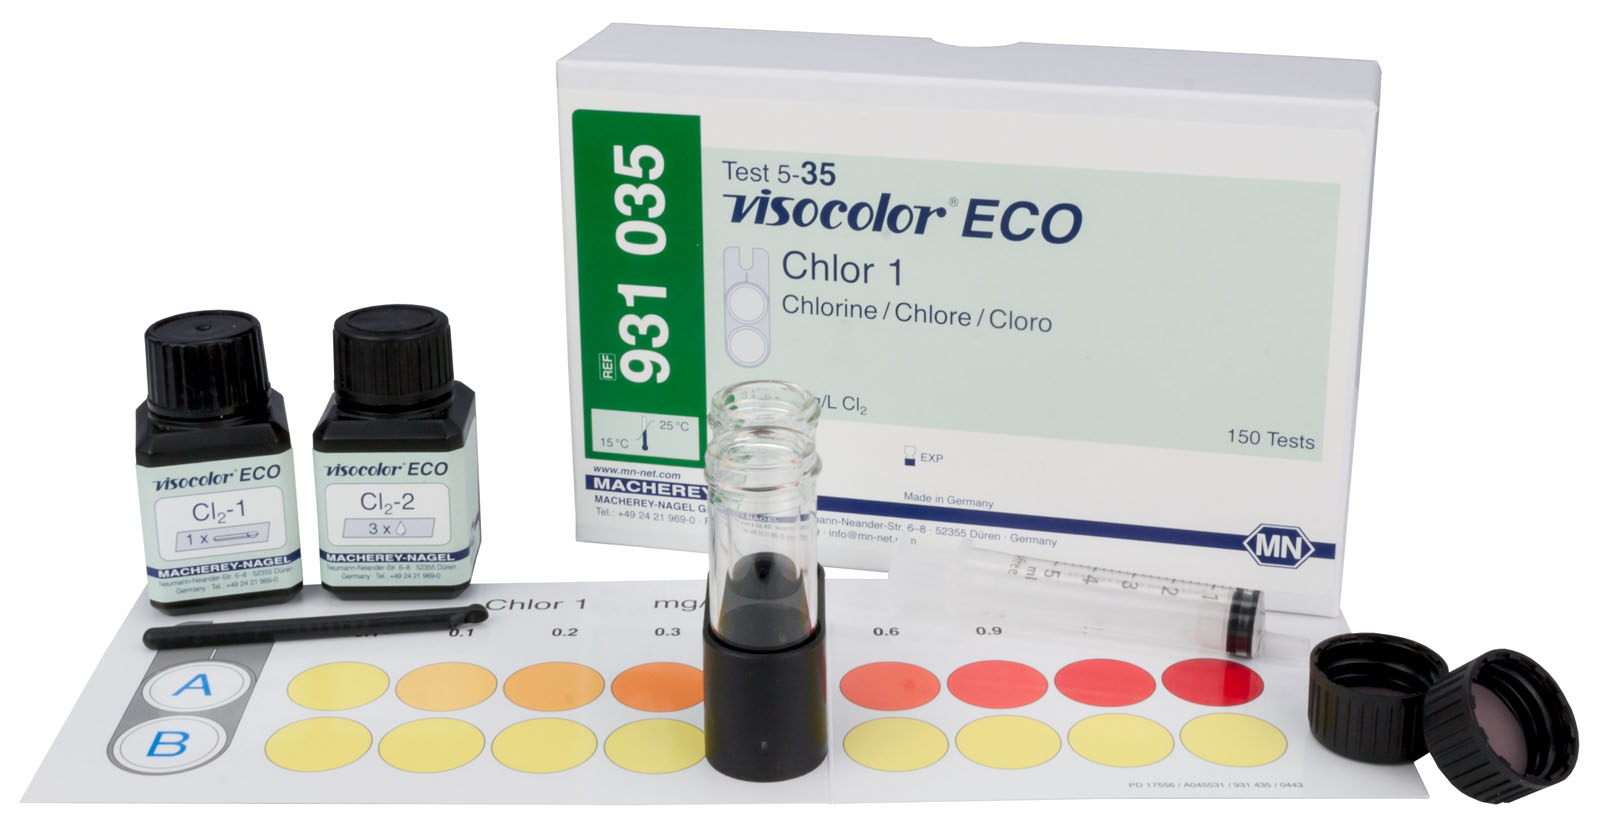 VISOCOLOR® ECO Chlorine Test Kit